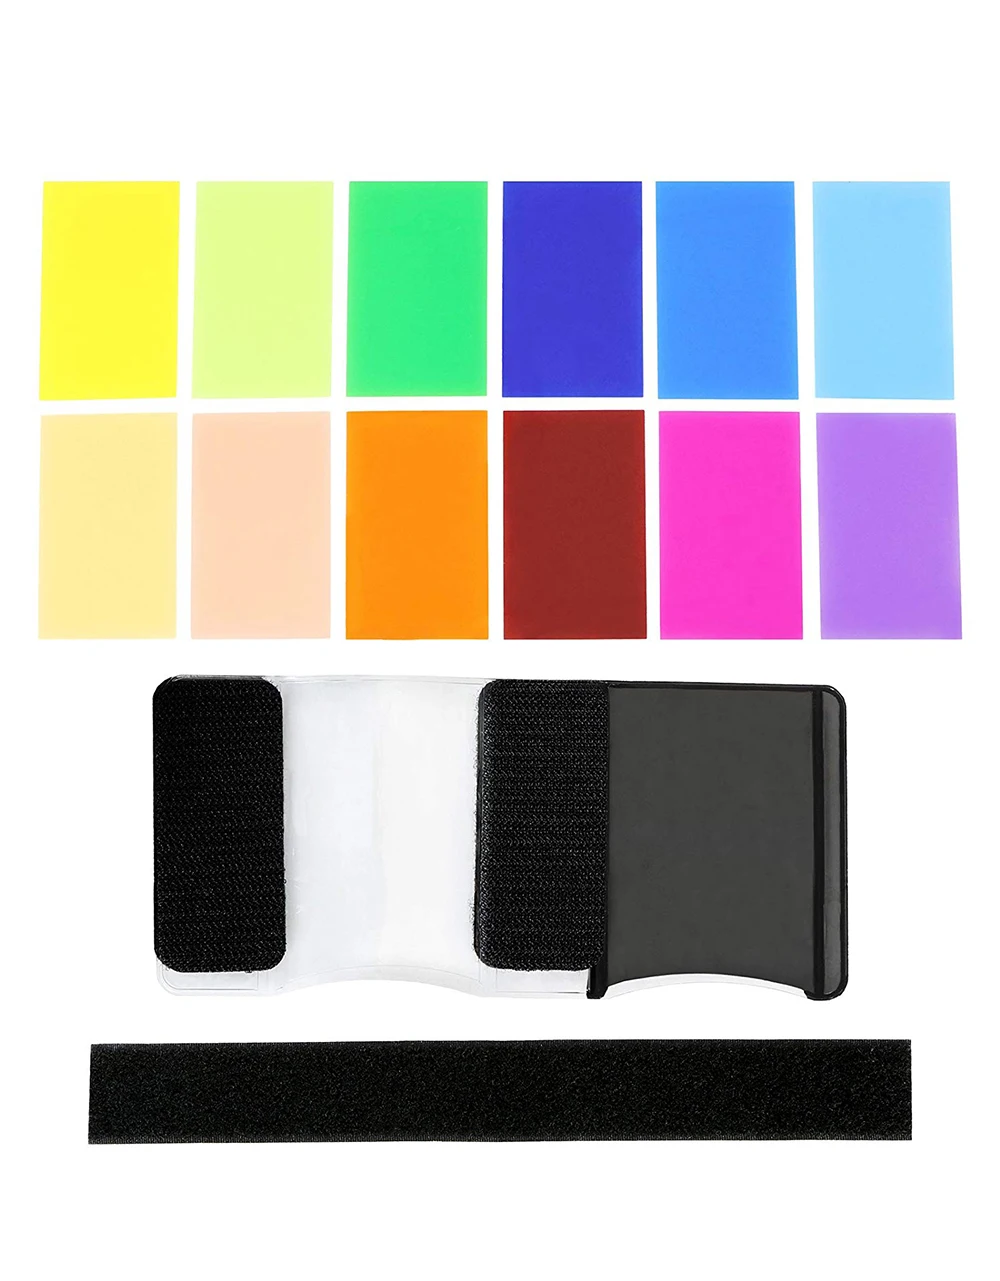 12 цветов вспышка диффузный гели фильтр прозрачный баланс цвета светофильтр комплект для фотостудии камеры аксессуары